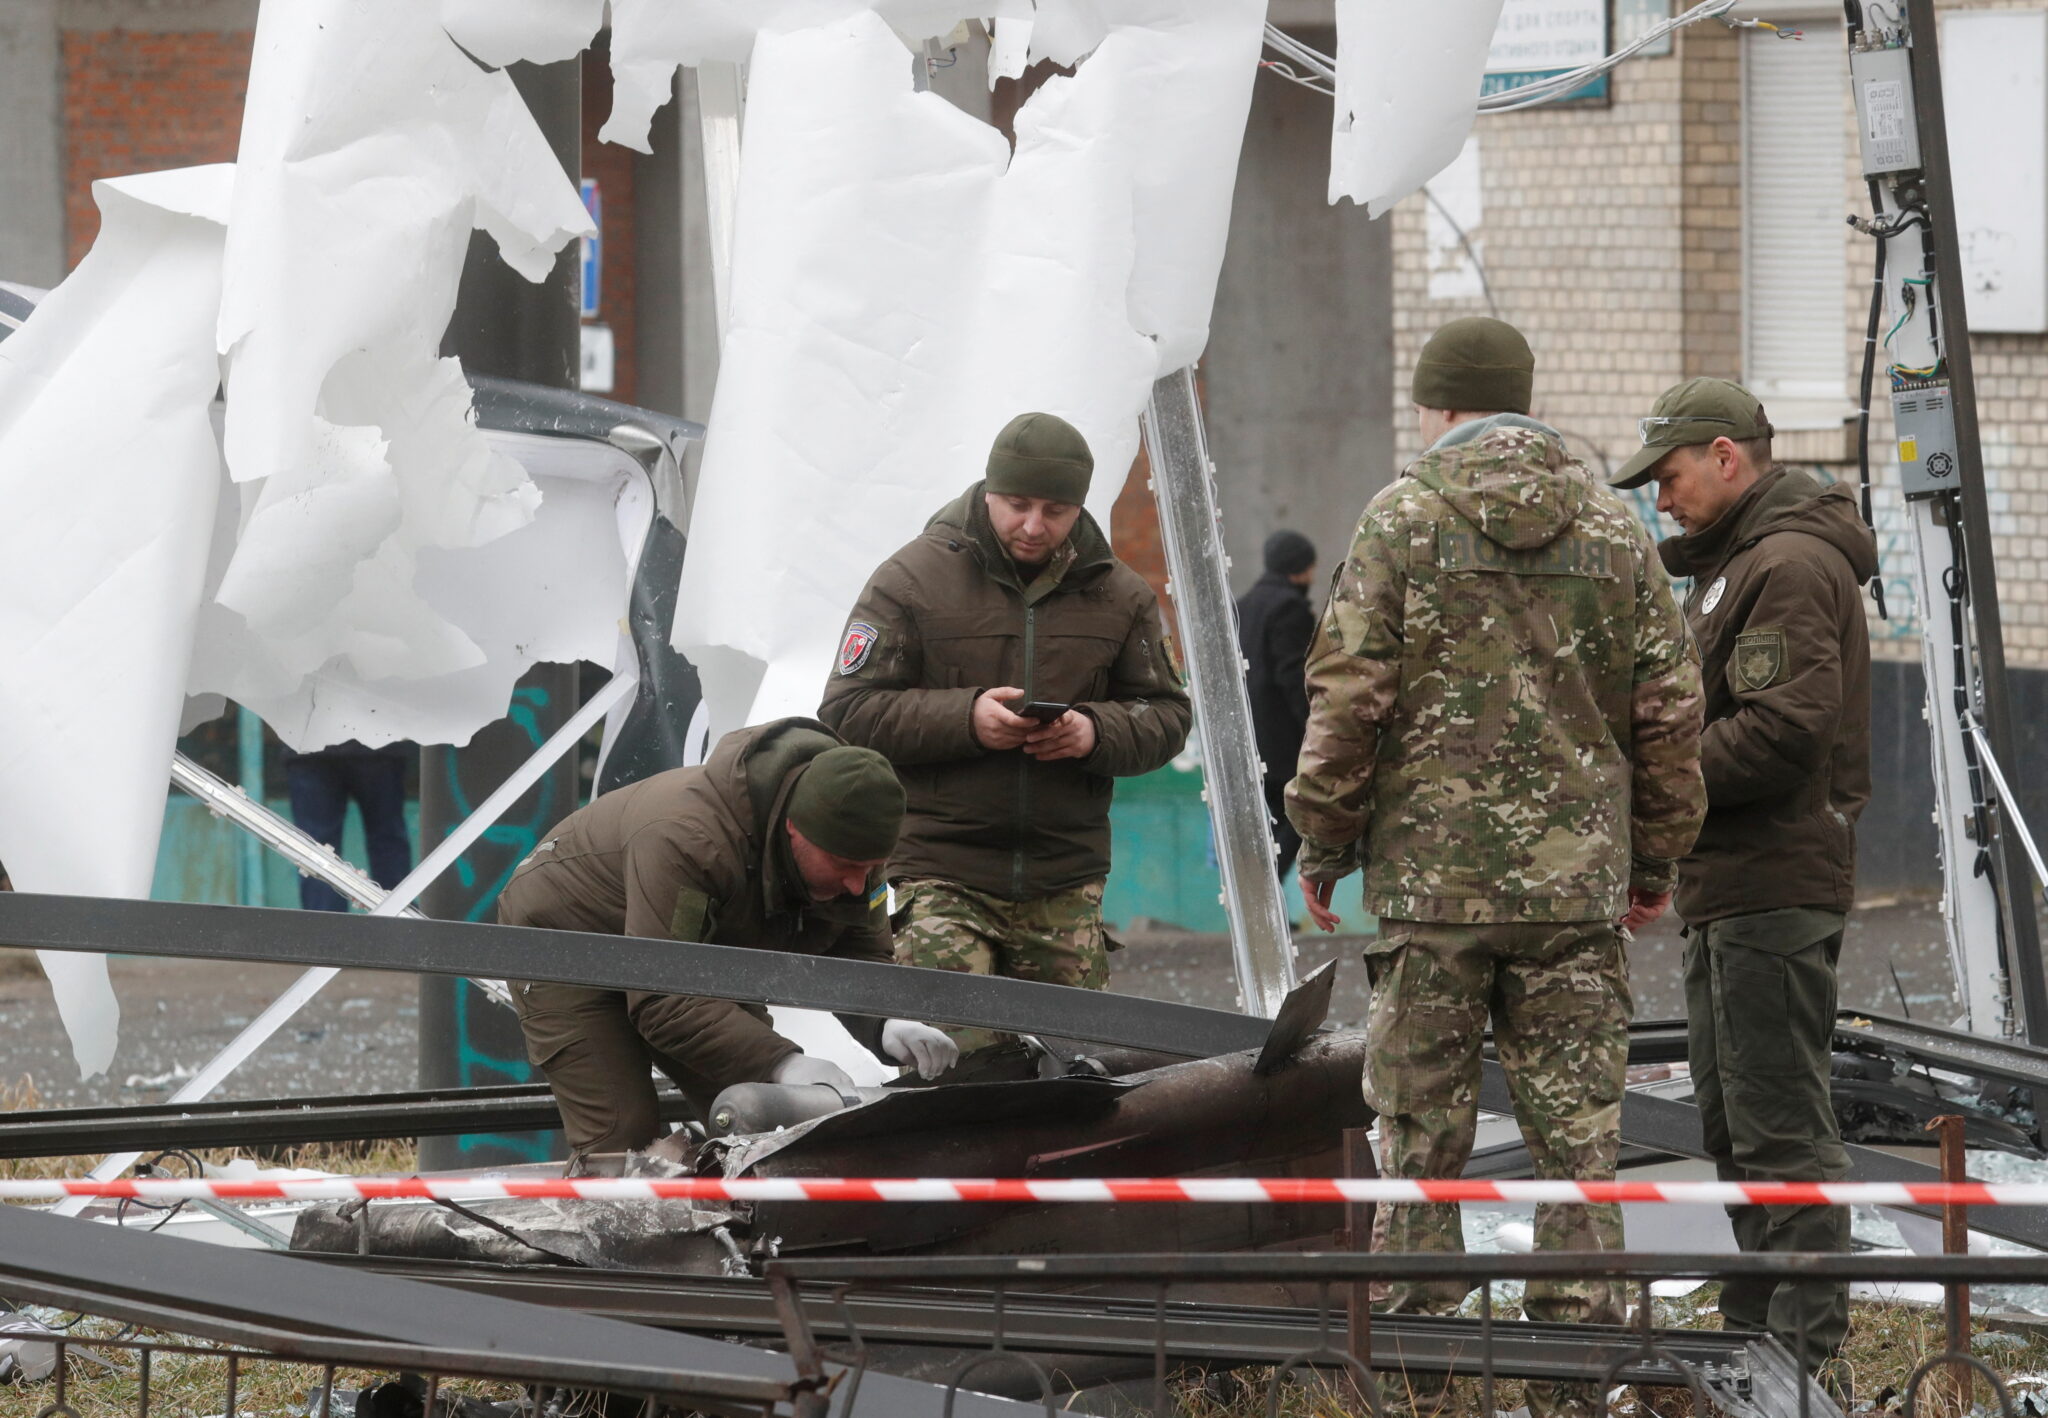 Полицейские осматривают остатки ракеты, упавшей на улицу Киева. Фото VALENTYN OGIRENKO / TASS / Scanpix / Leta